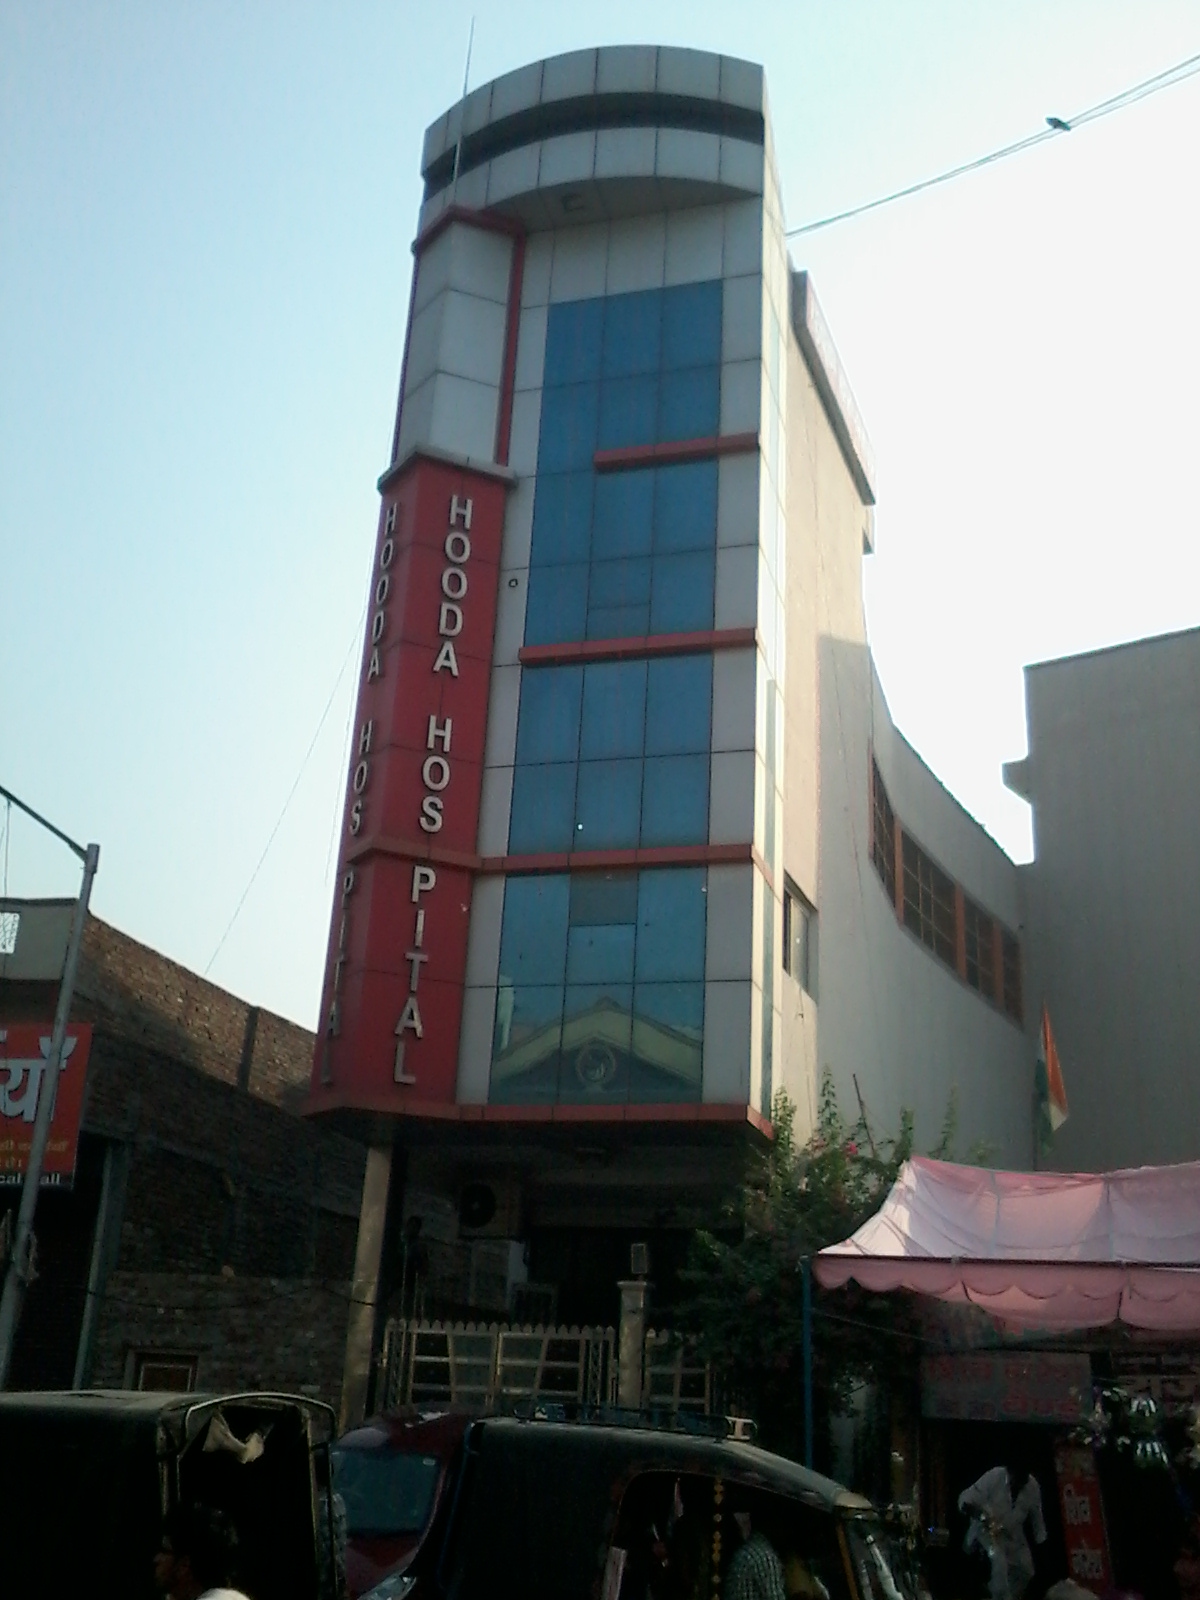 Hooda Hospital Rohtak Hospitals 03